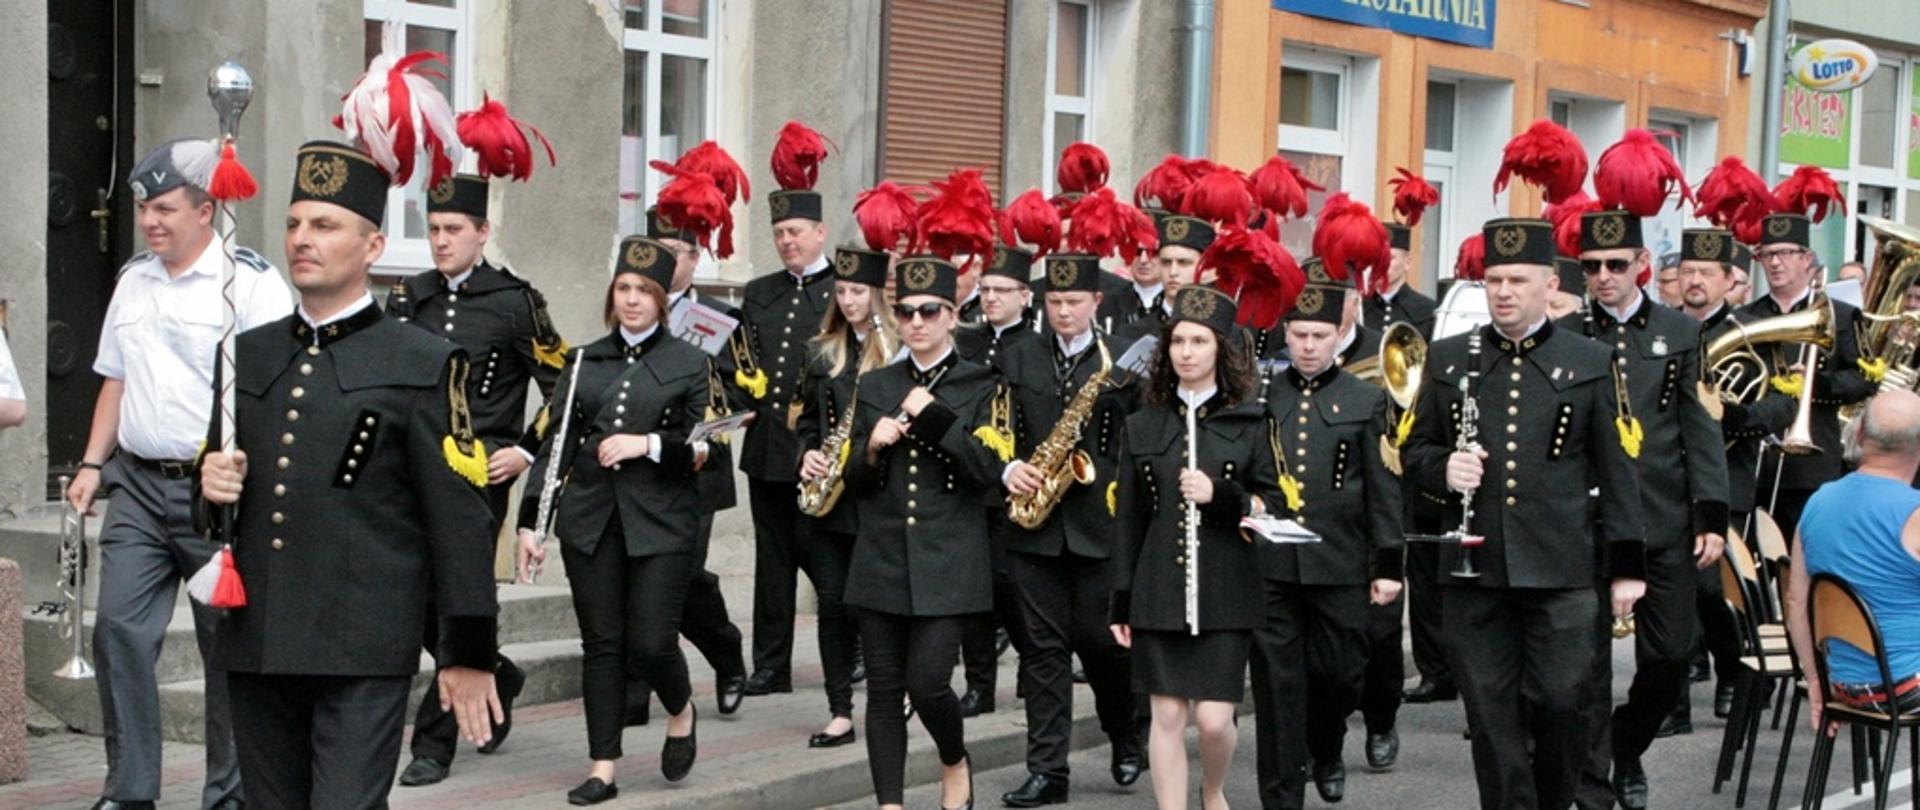 Pokaz musztry paradnej w wykonaniu Orkiestry Kopalni Węgla Brunatnego z Konina. Orkiestra w pełnym składzie przechodzi ulicami miasta dookoła rynku w Margoninie. Ubrani są w czarne mundury z ozdobnymi czerwonymi pióropuszami na czubkach czapek.